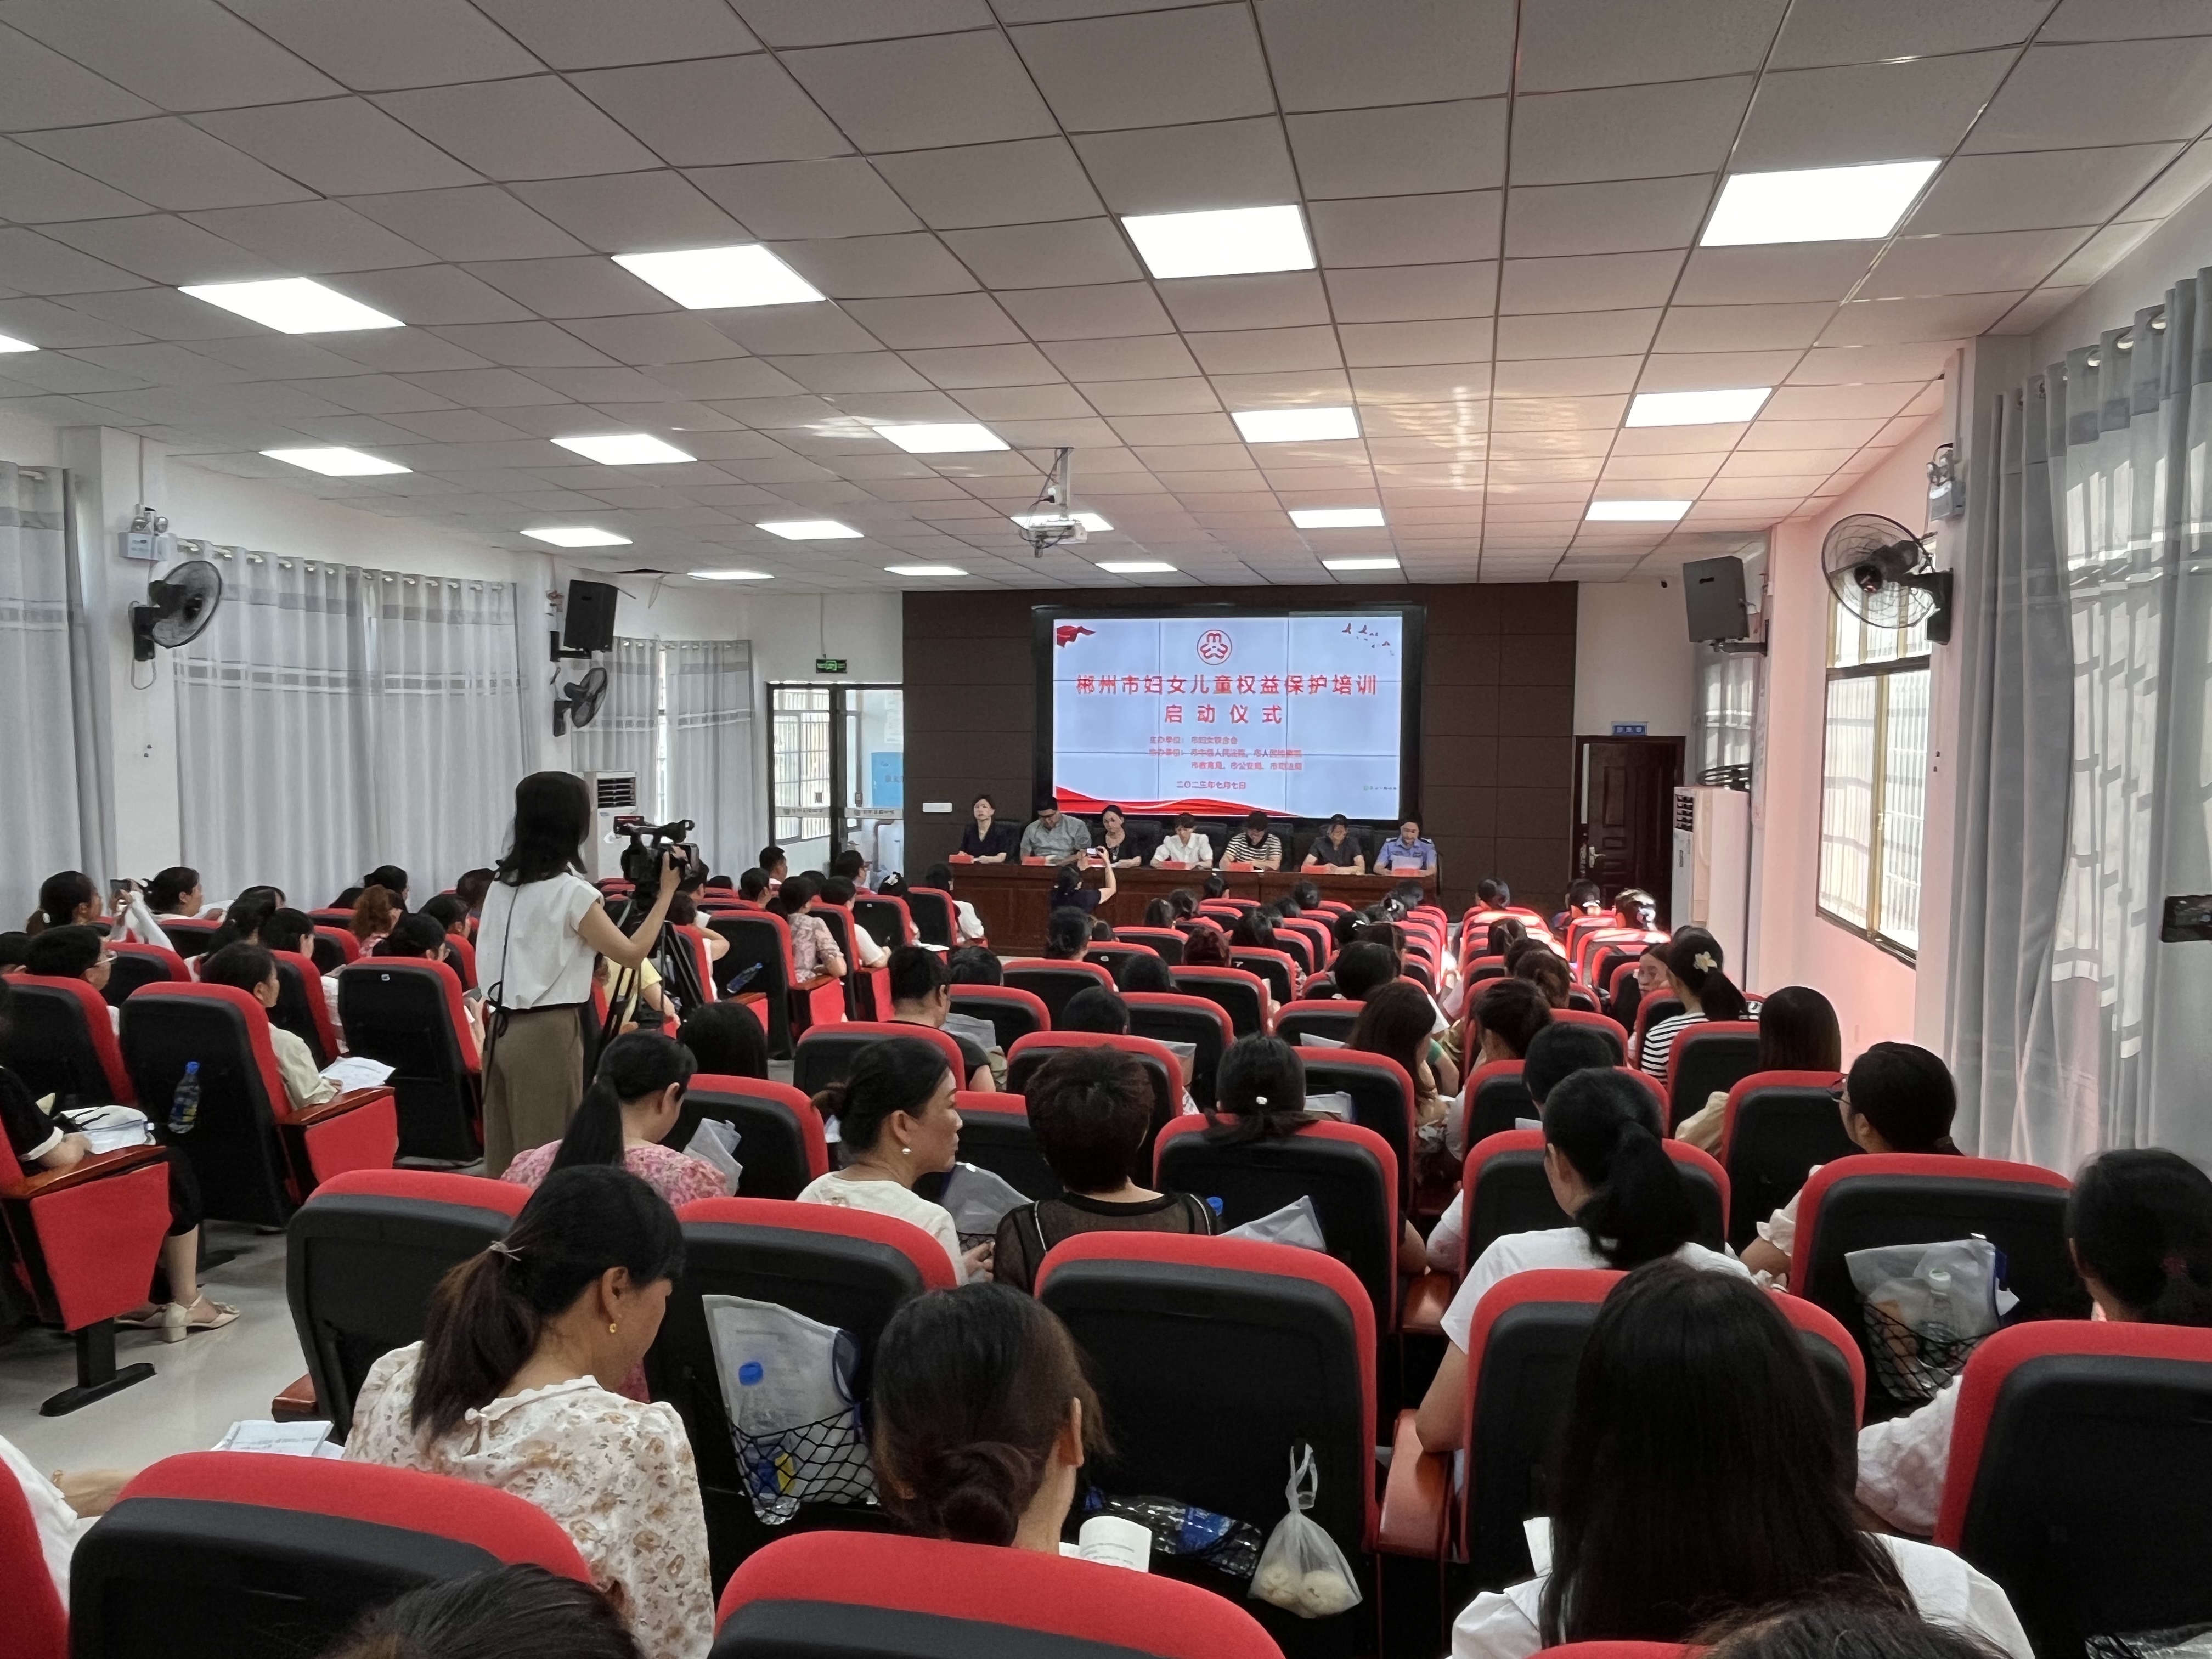 郴州市举行妇女儿童权益保护培训启动仪式暨首场培训会